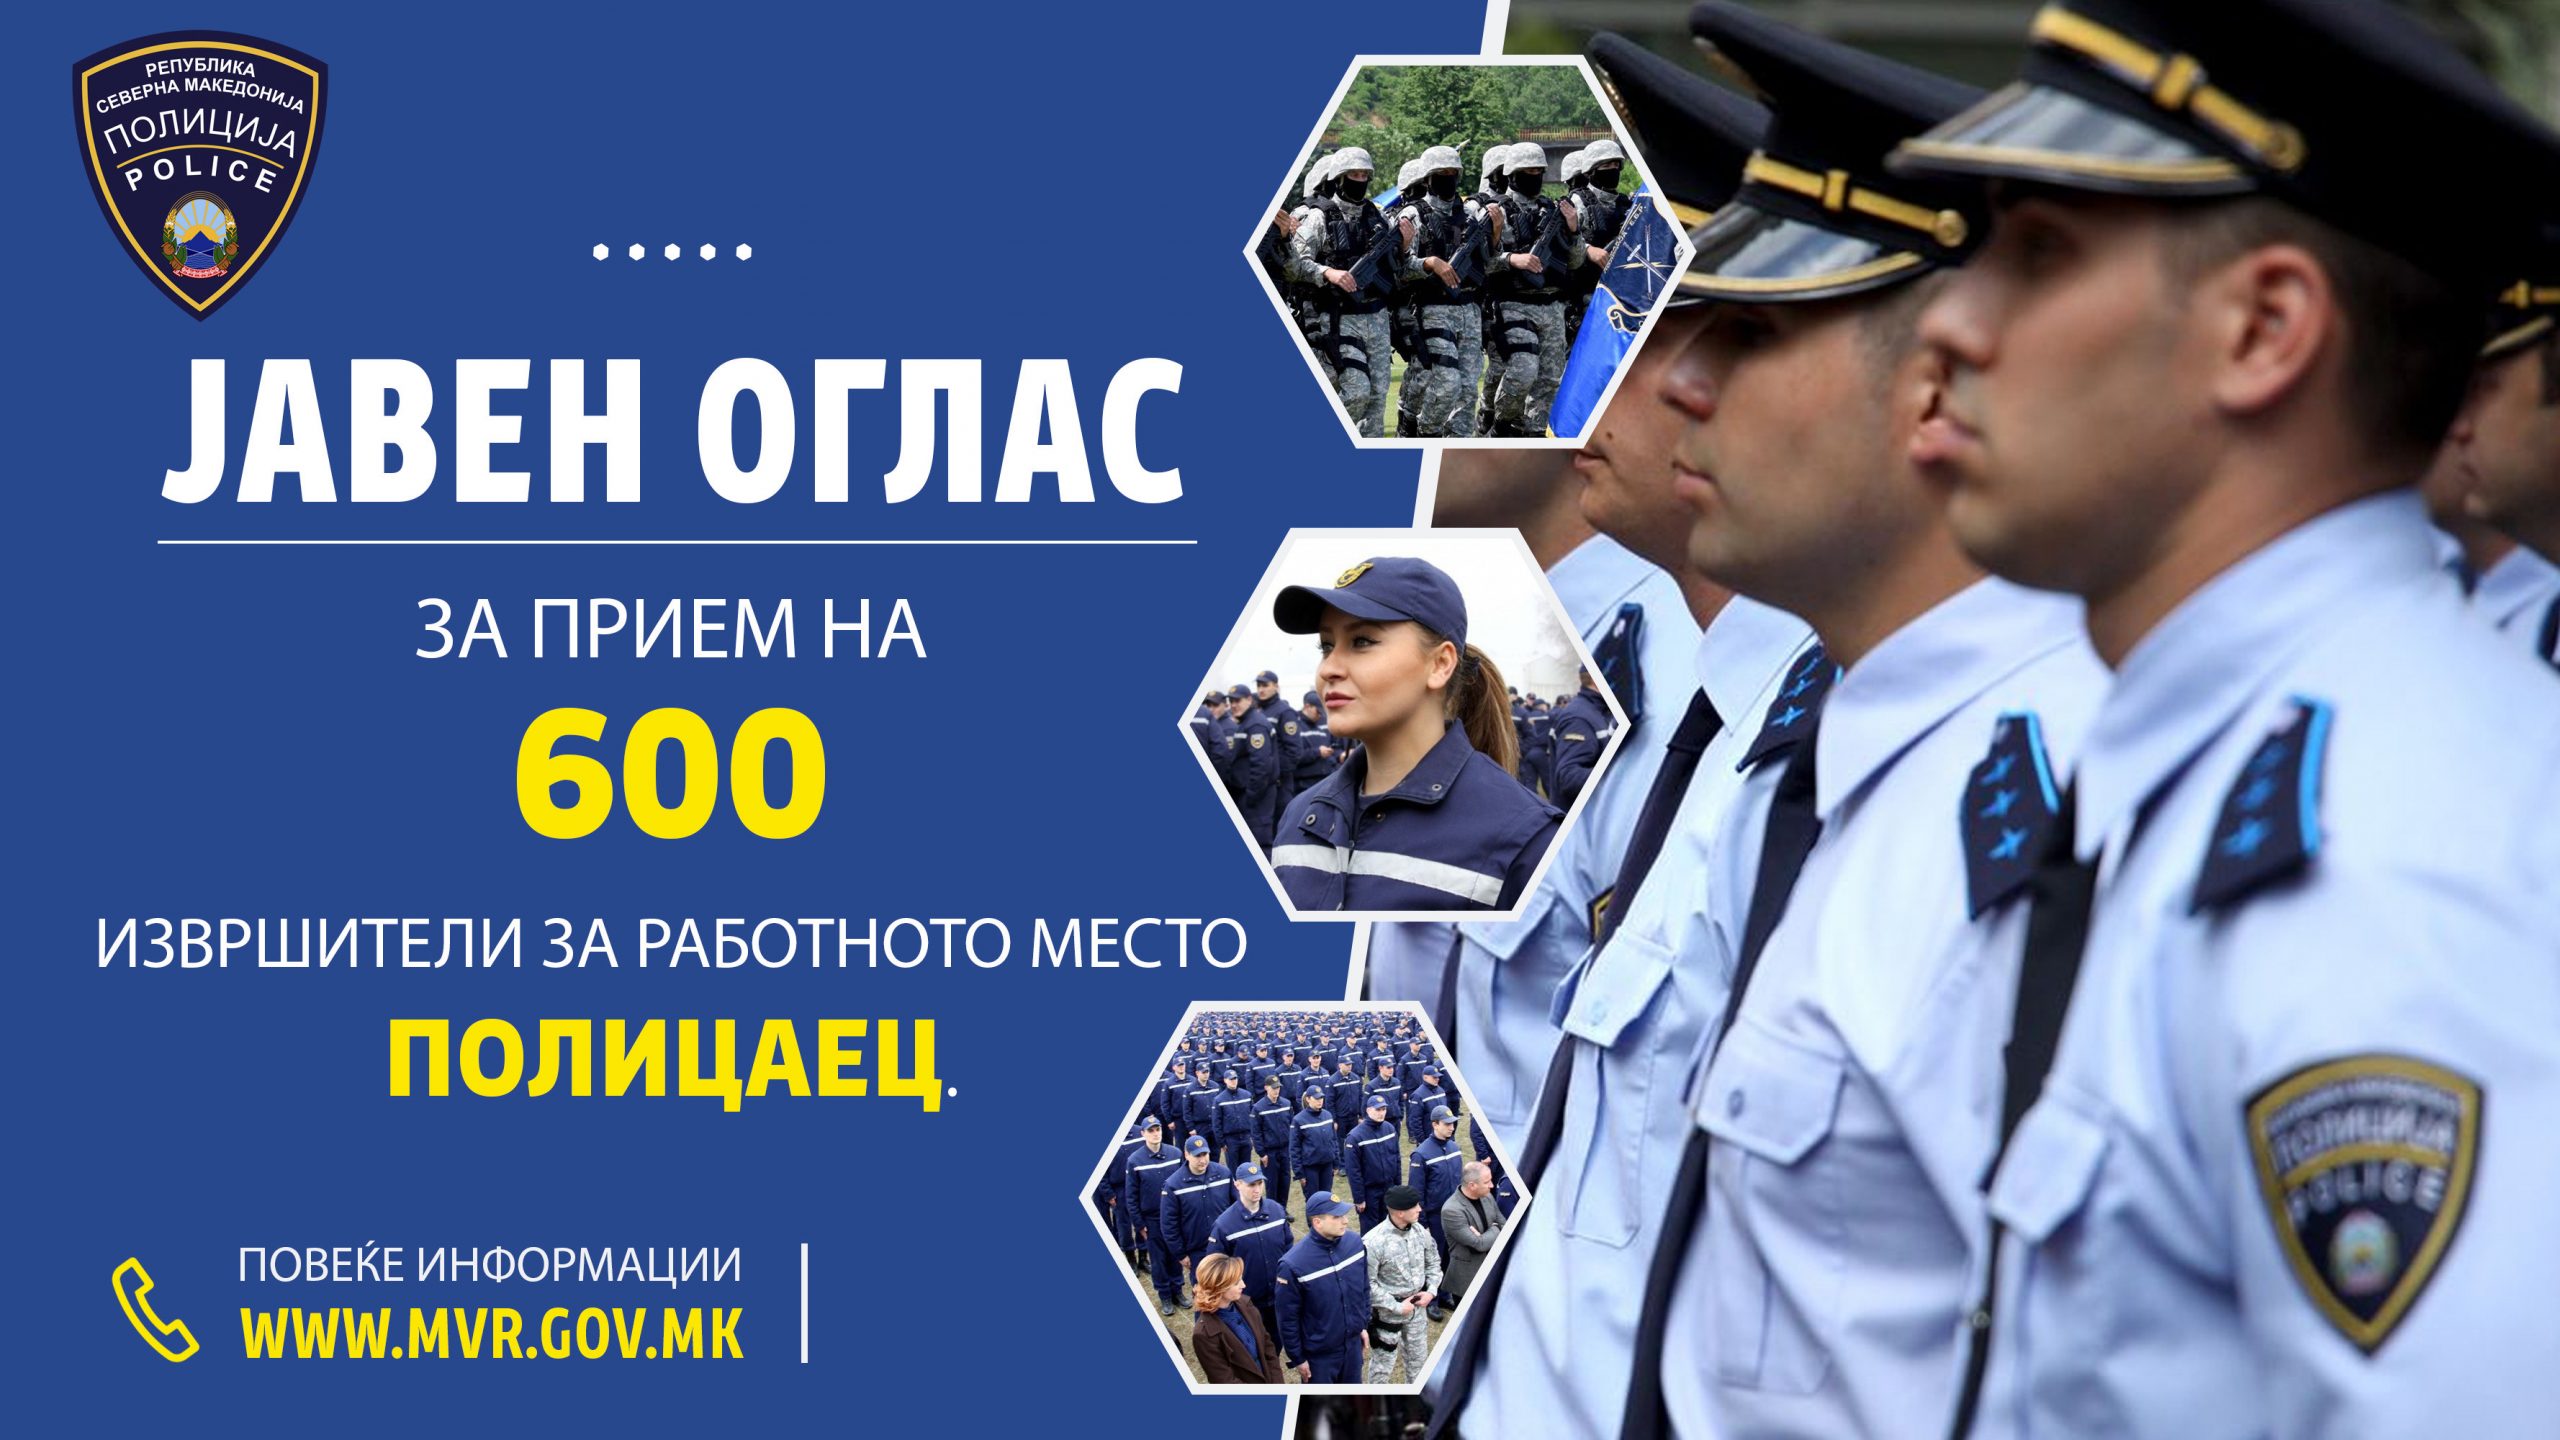 МВР објави оглас за вработување на 600 полицајци